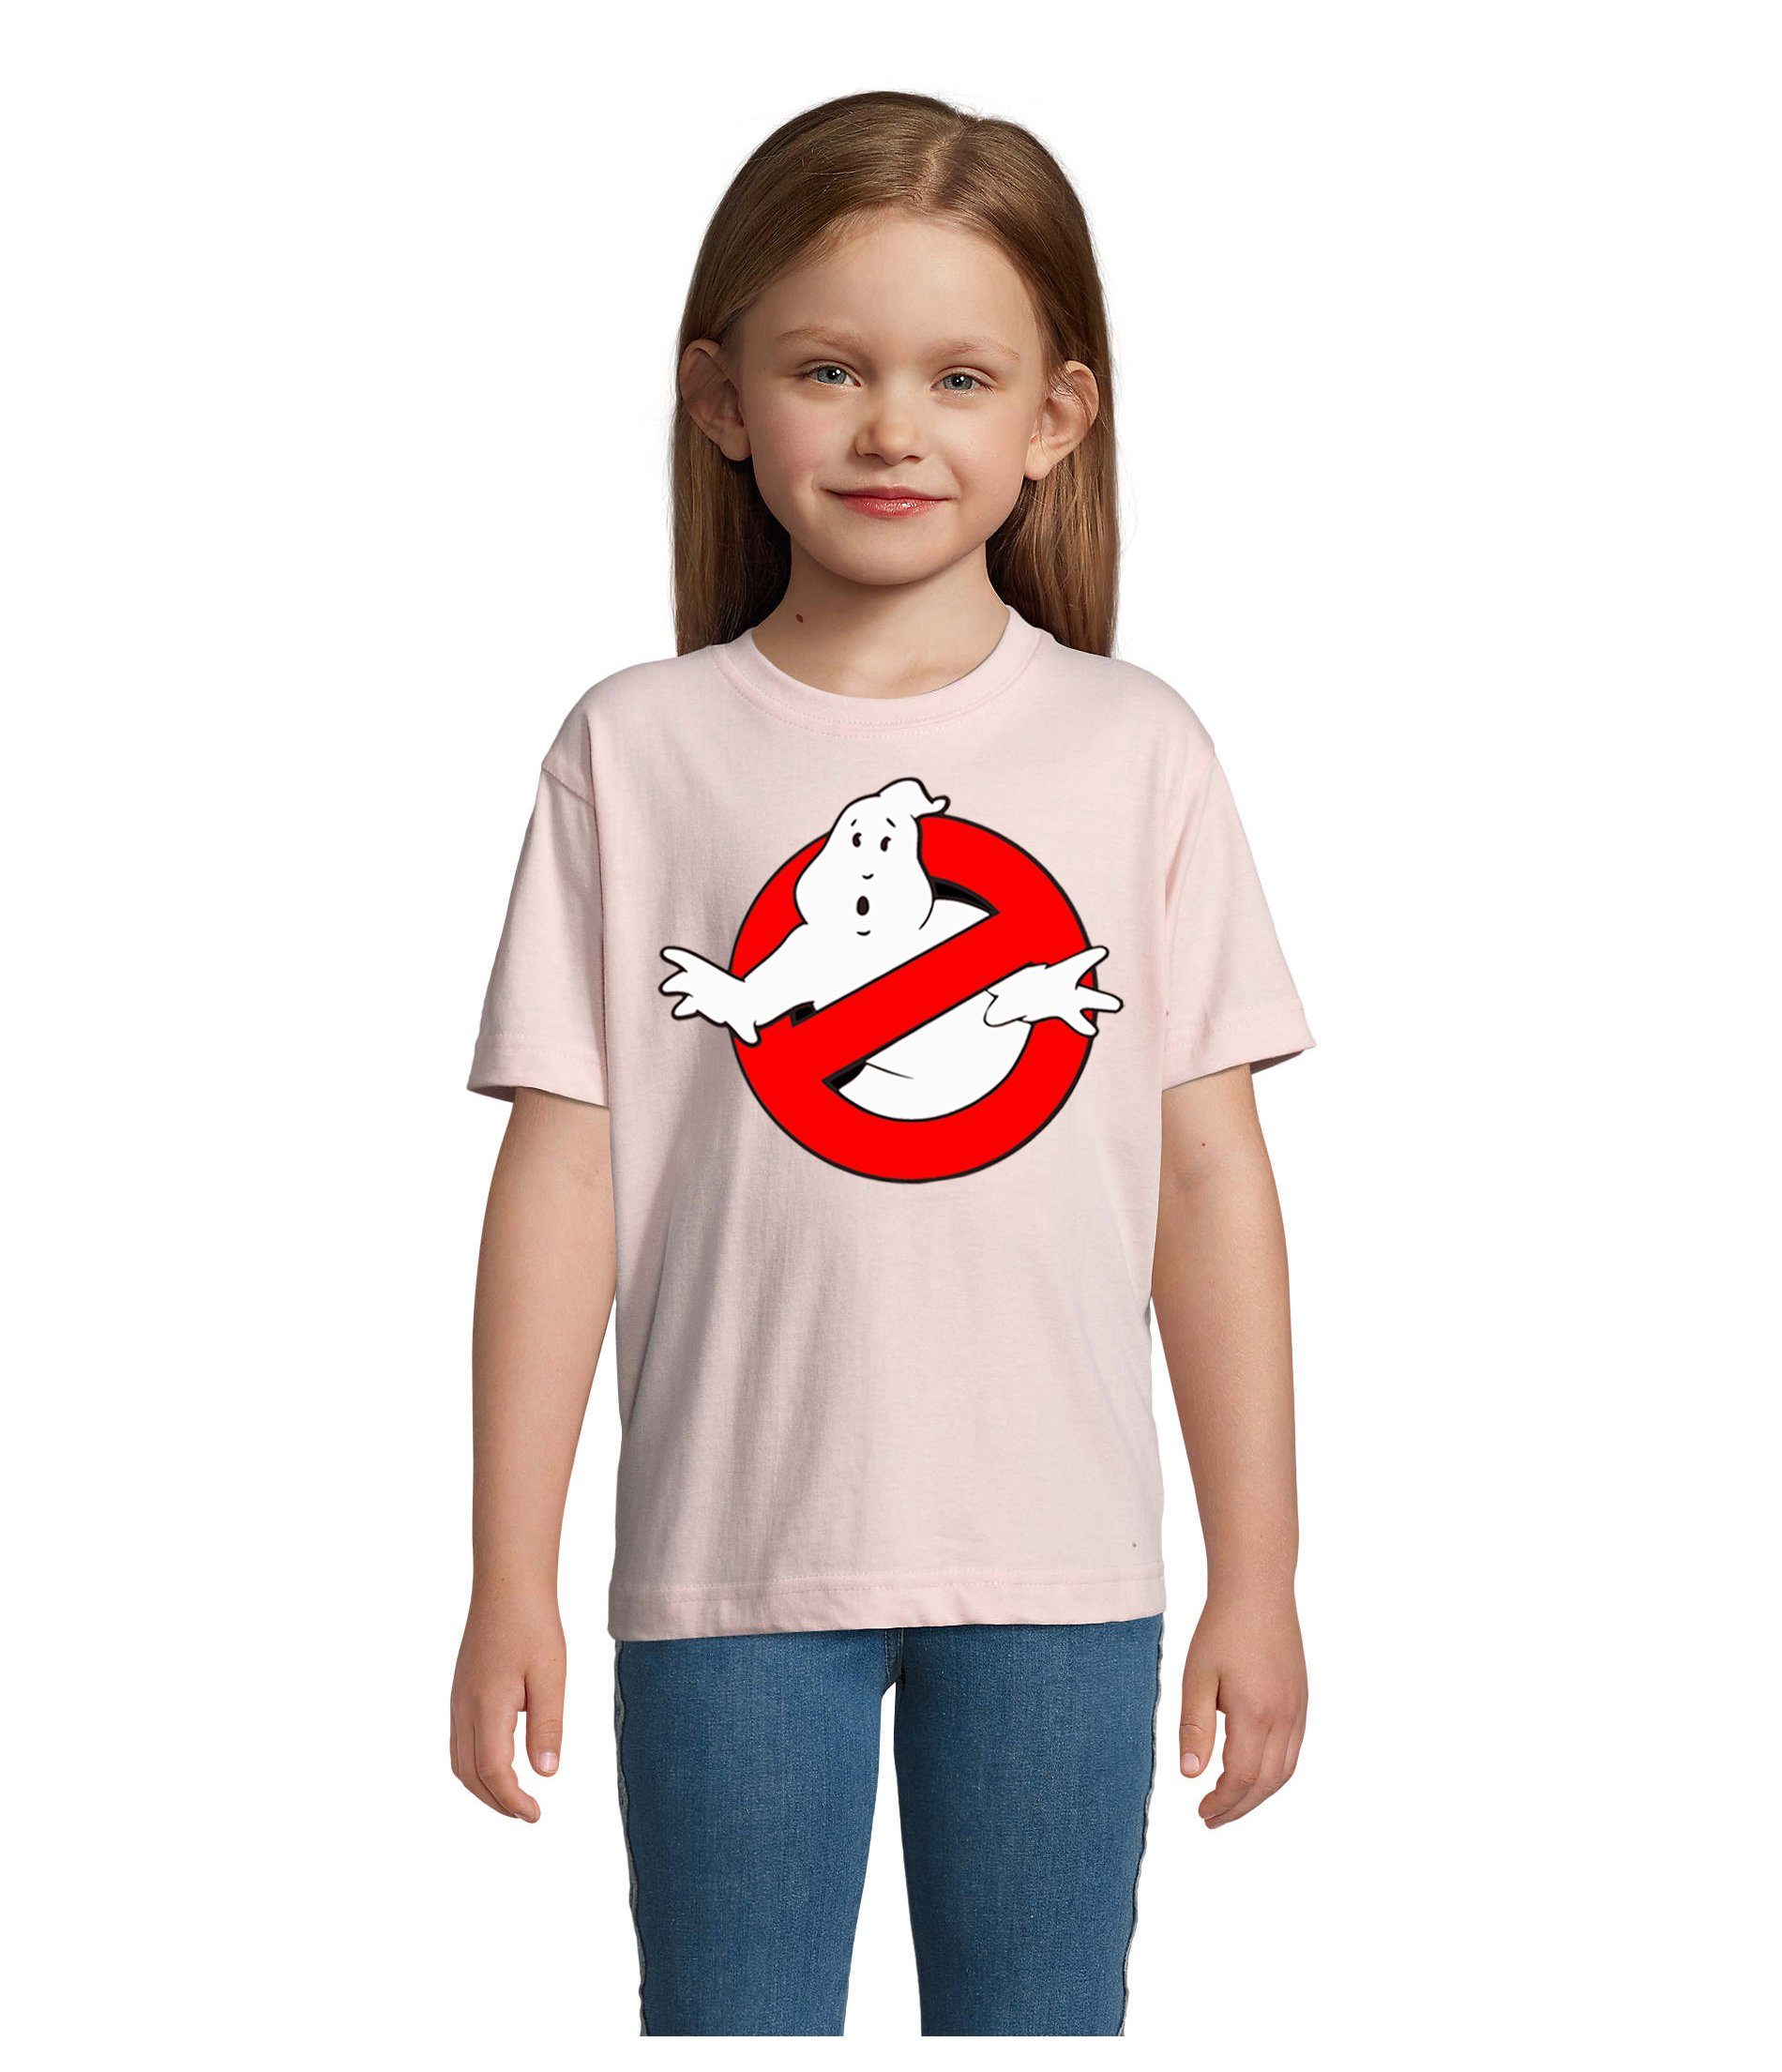 Blondie & Brownie T-Shirt Kinder Jungen & Mädchen Ghostbusters Ghost Geister Geisterjäger in vielen Farben Rosa